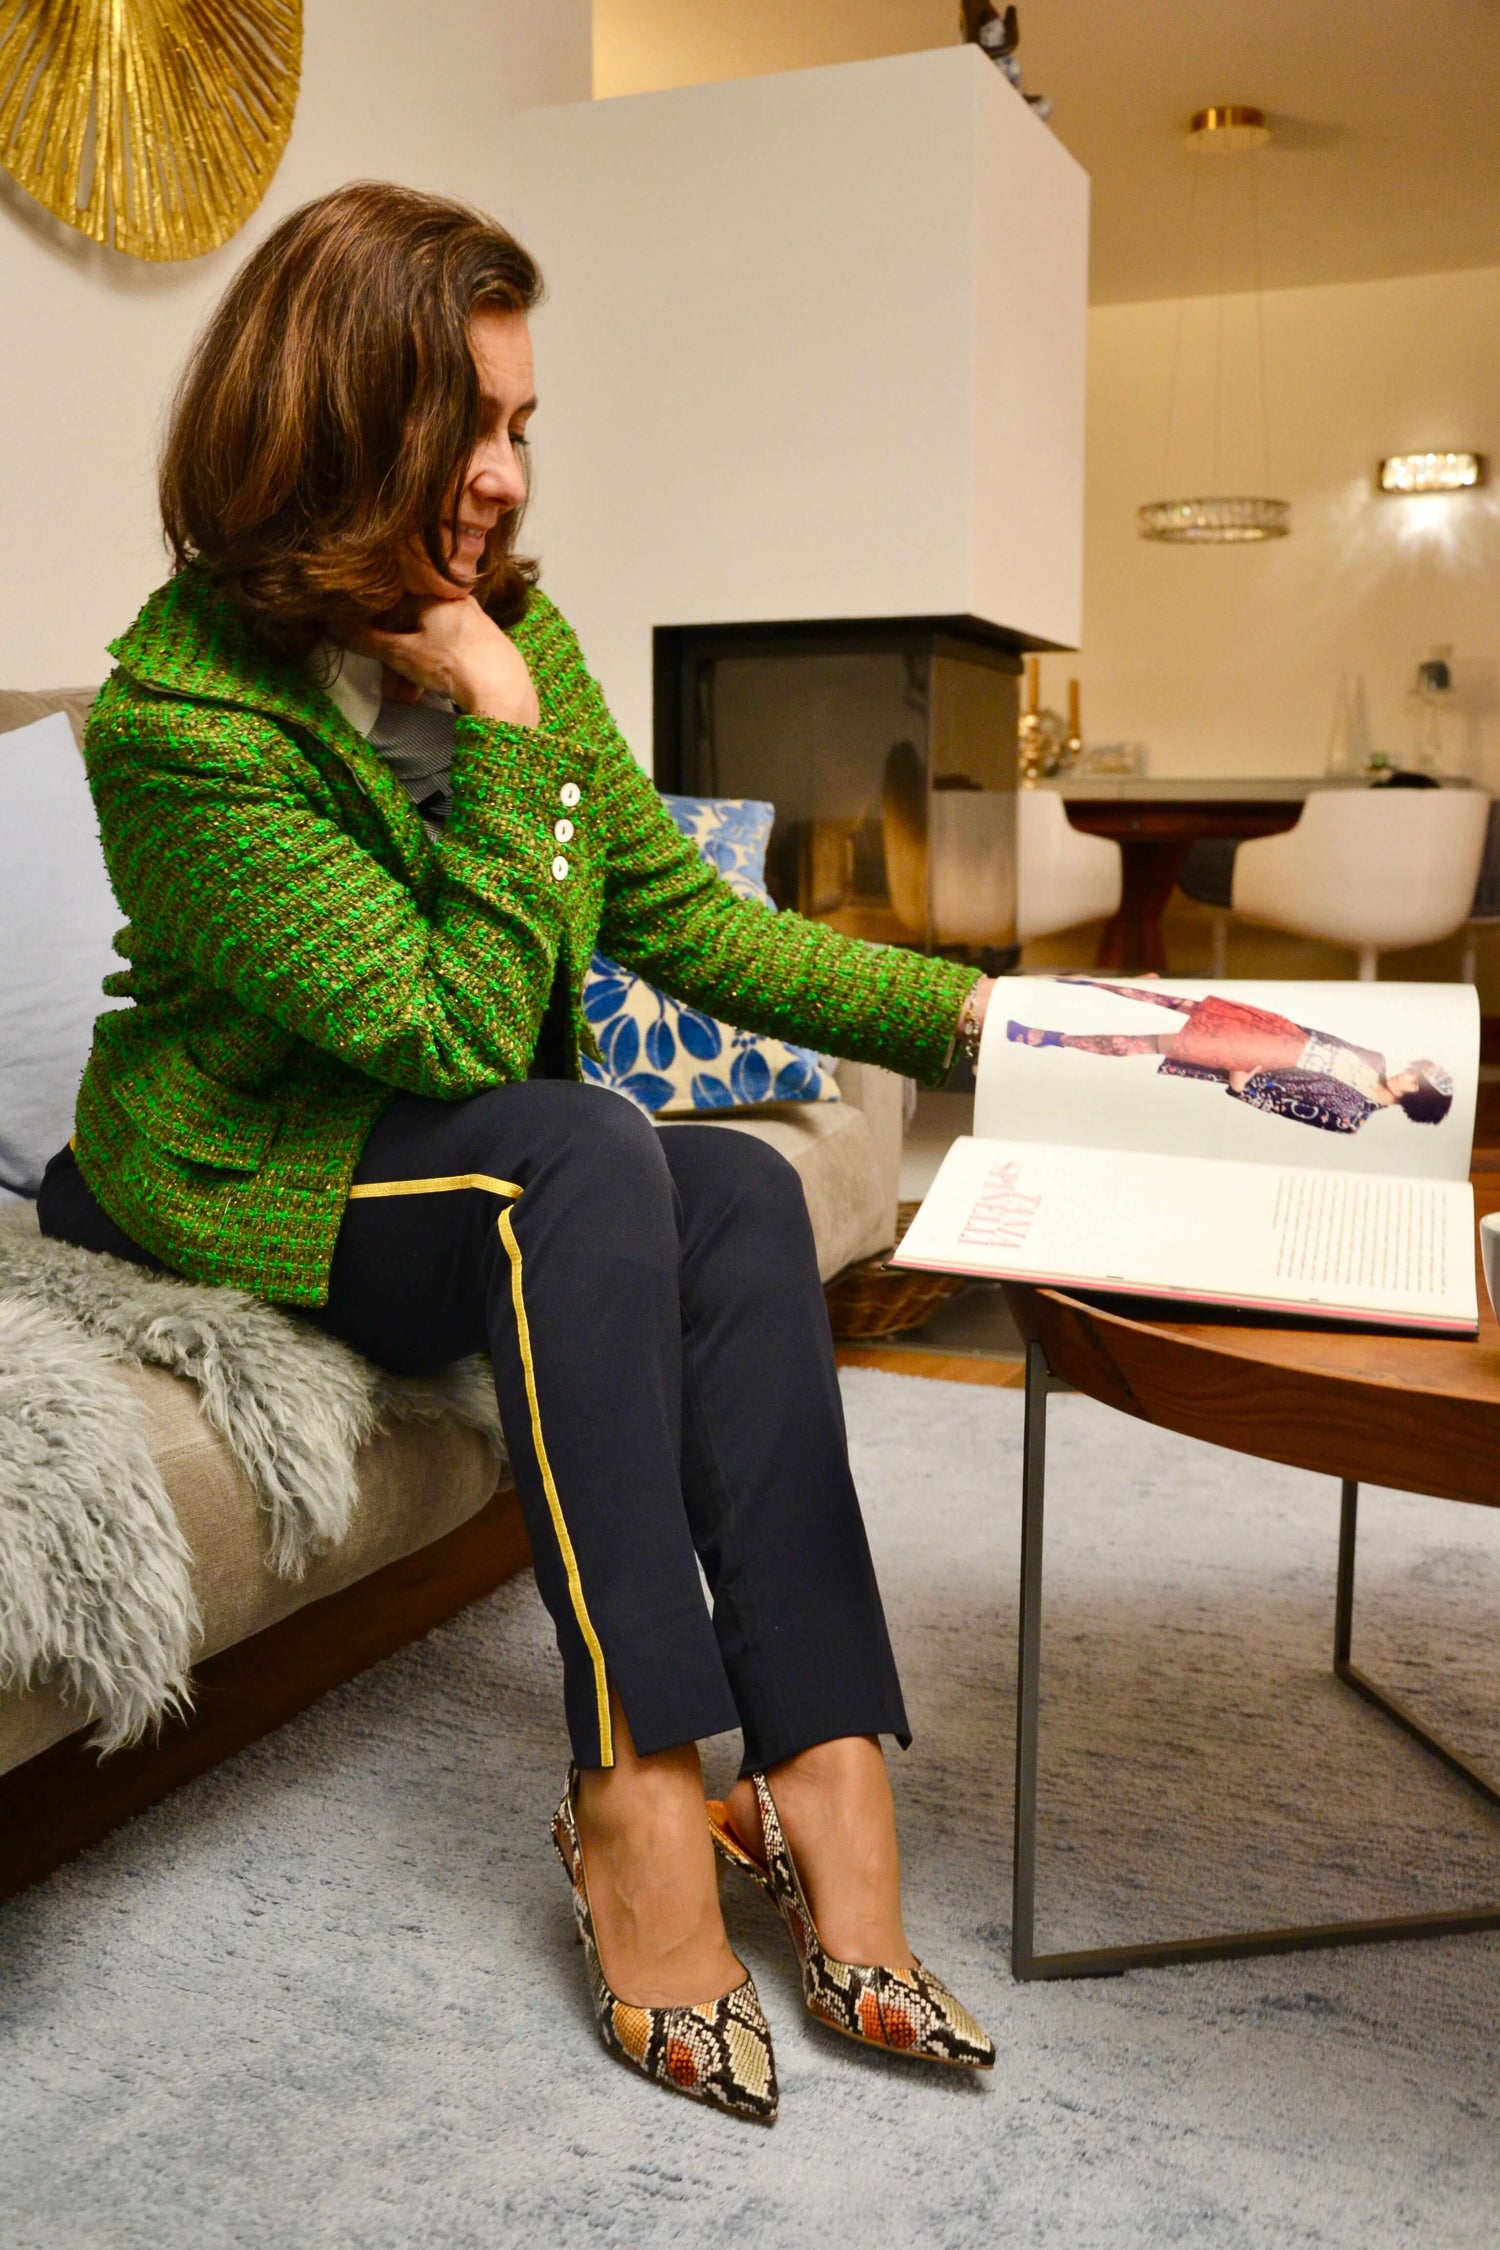 Suzanne Schwarz, Inhaberin von Tagliascarpe, blättert in einem Buch mit Designerschuhen